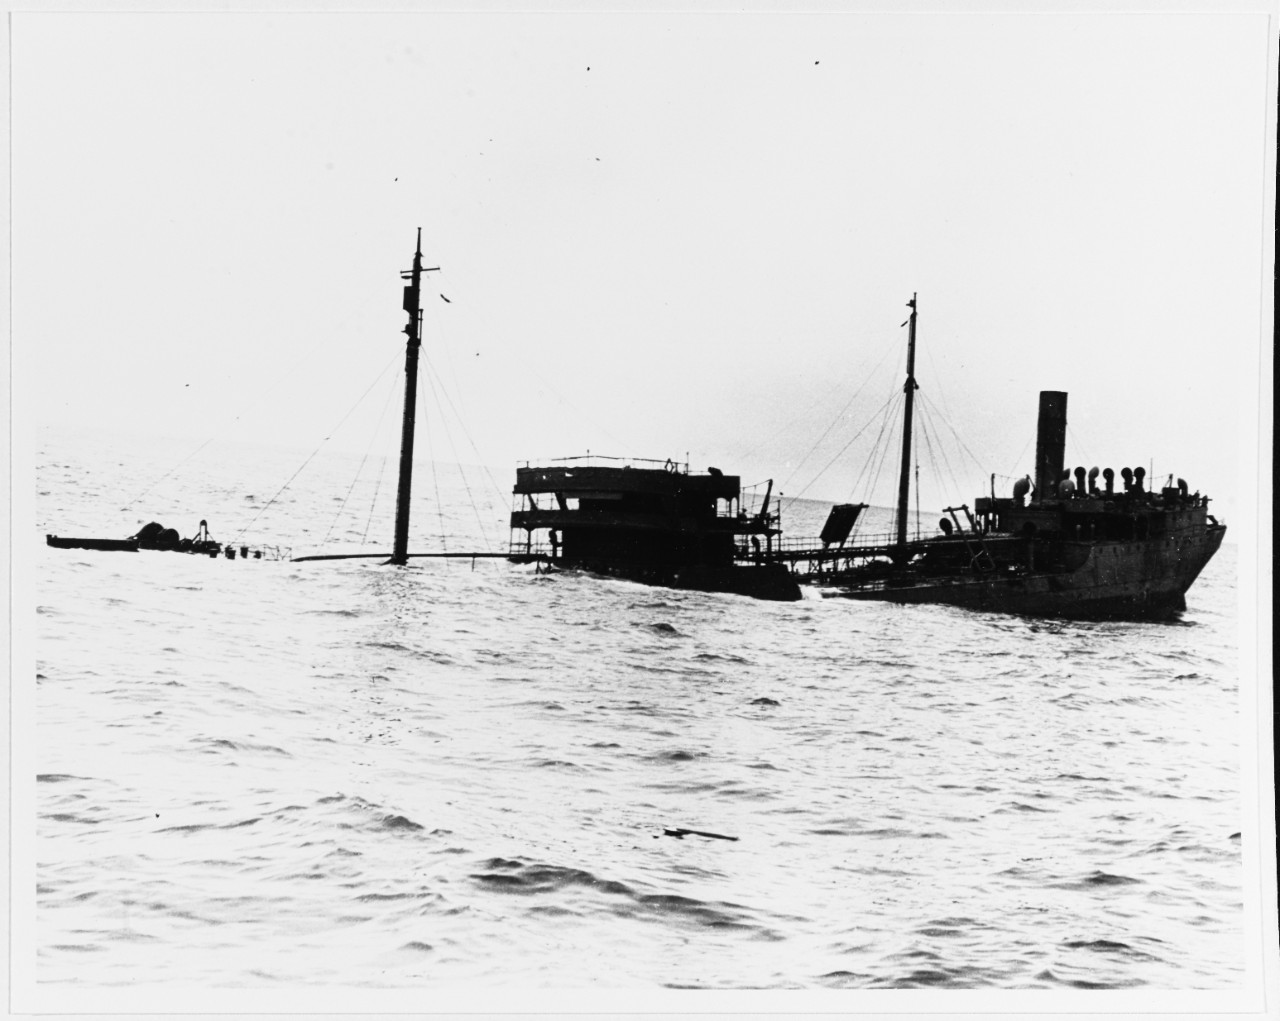 S.S. CAMDEN (U.S. Merchant Tanker, 1921-1942)